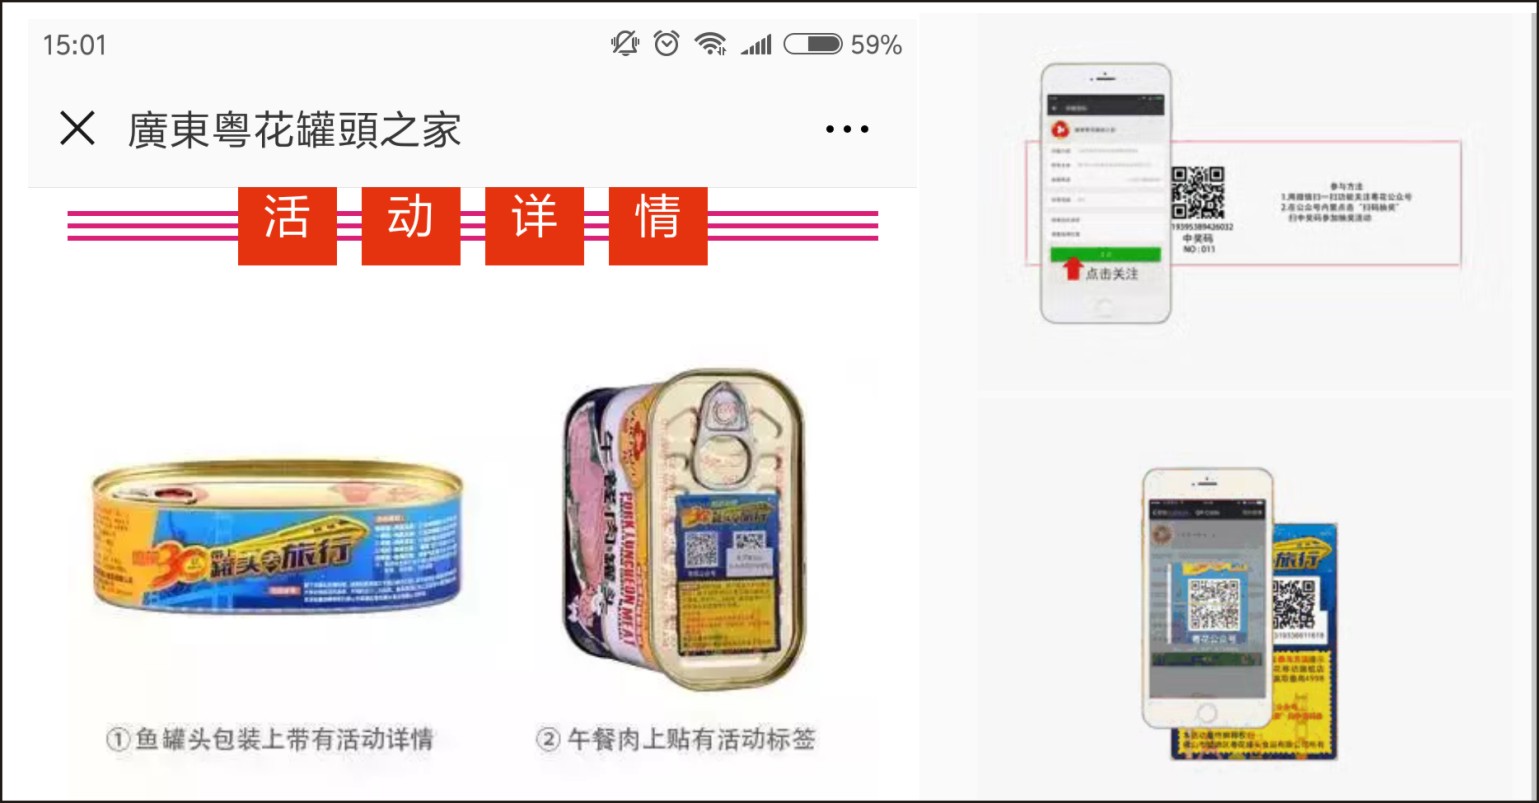 粵花食品攜手雲證物聯網打造微信紅包準確行銷方案 科技 第1張